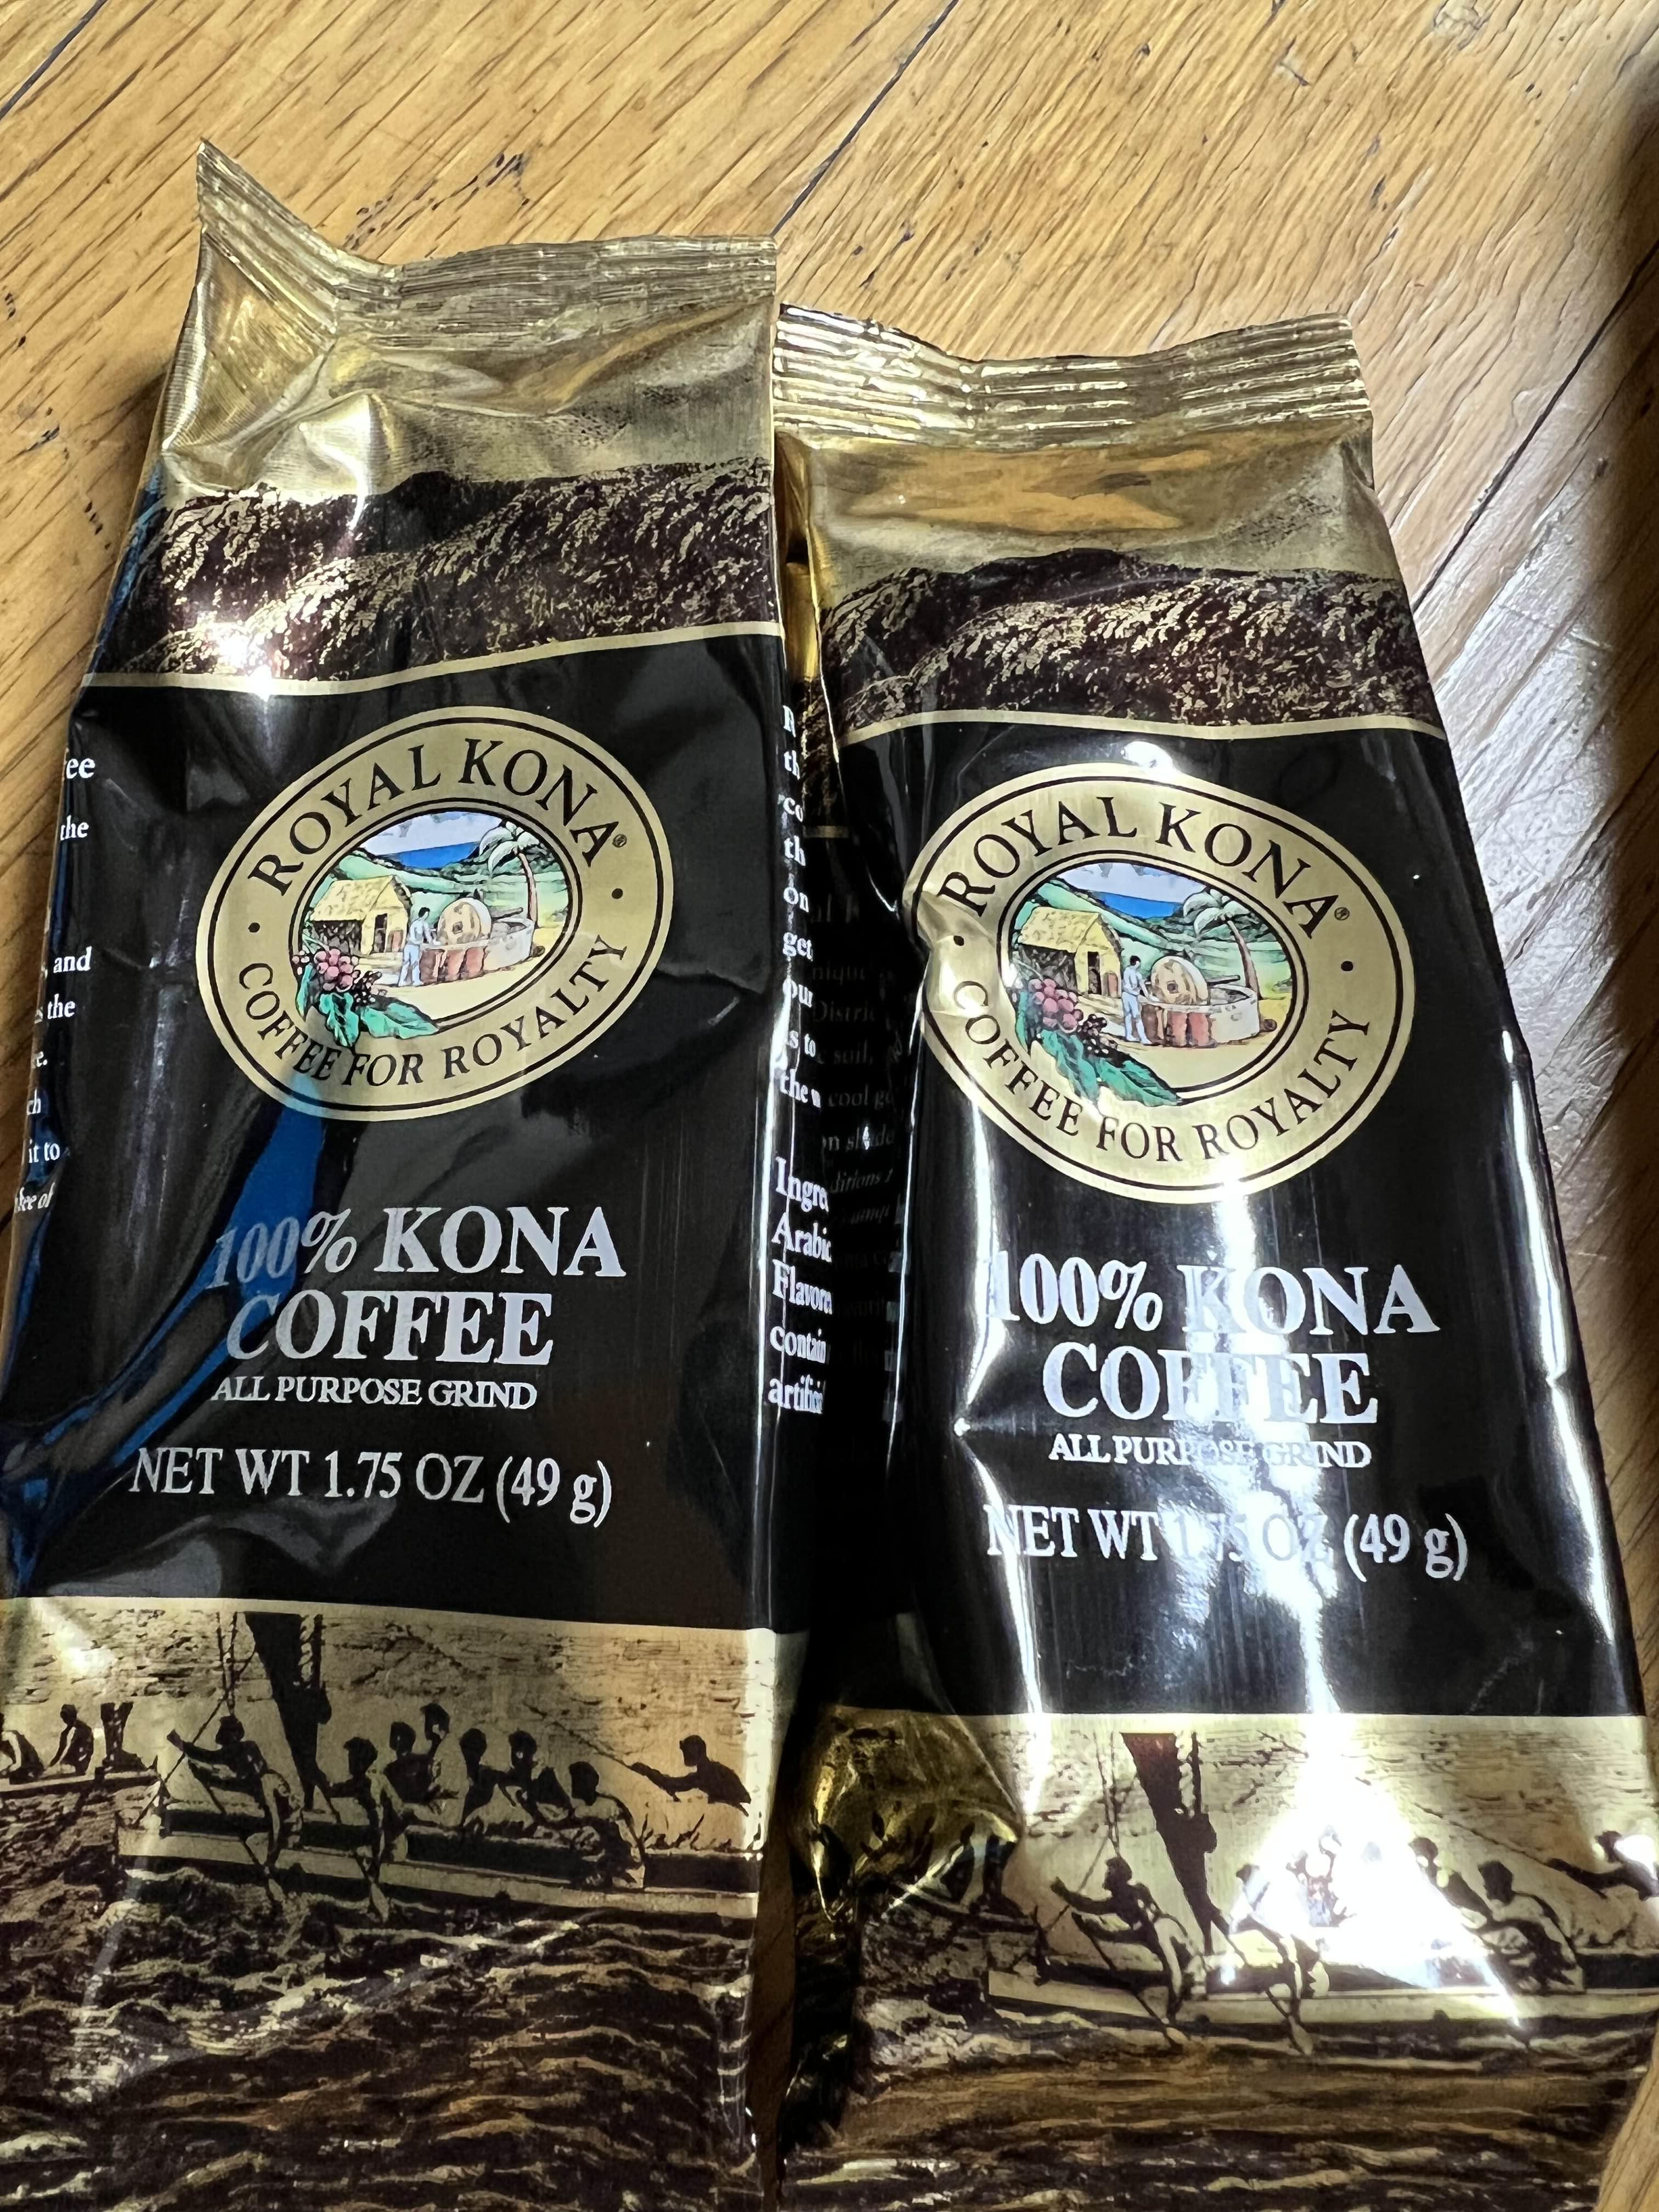 로얄 코나 100% 코나 커피 미니 버전